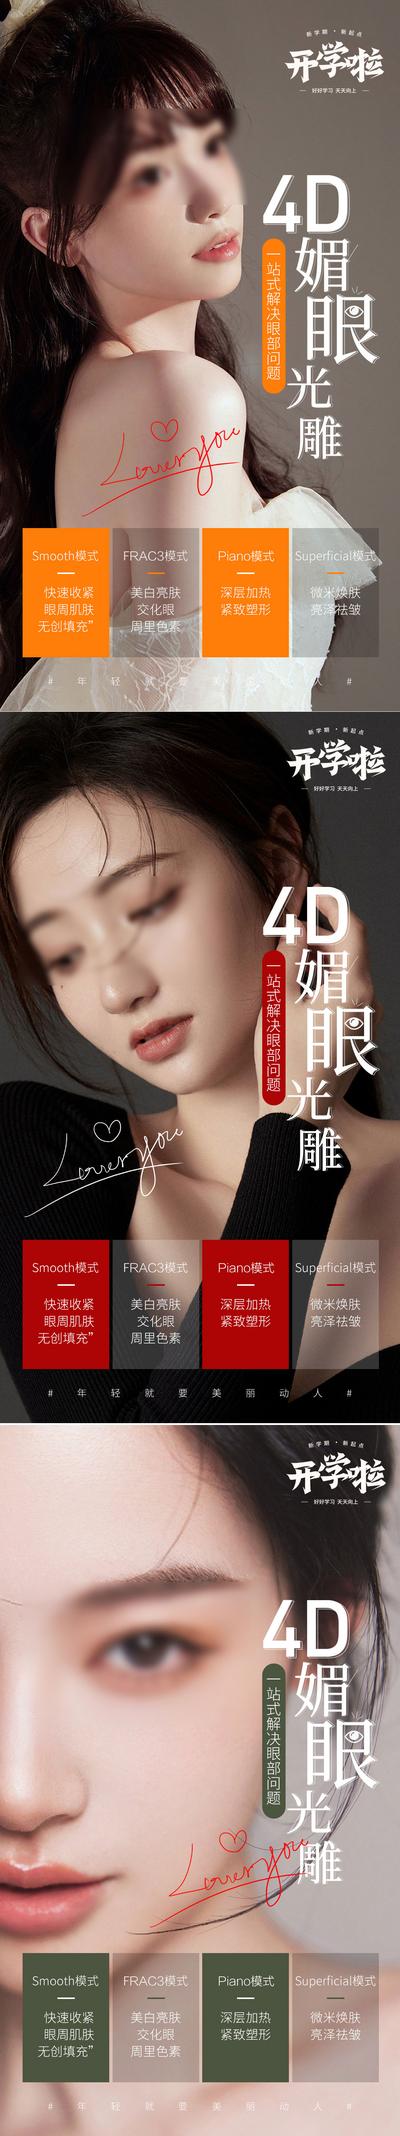 南门网 广告 海报 医美 人物 开学季 4D 媚眼 光雕 系列